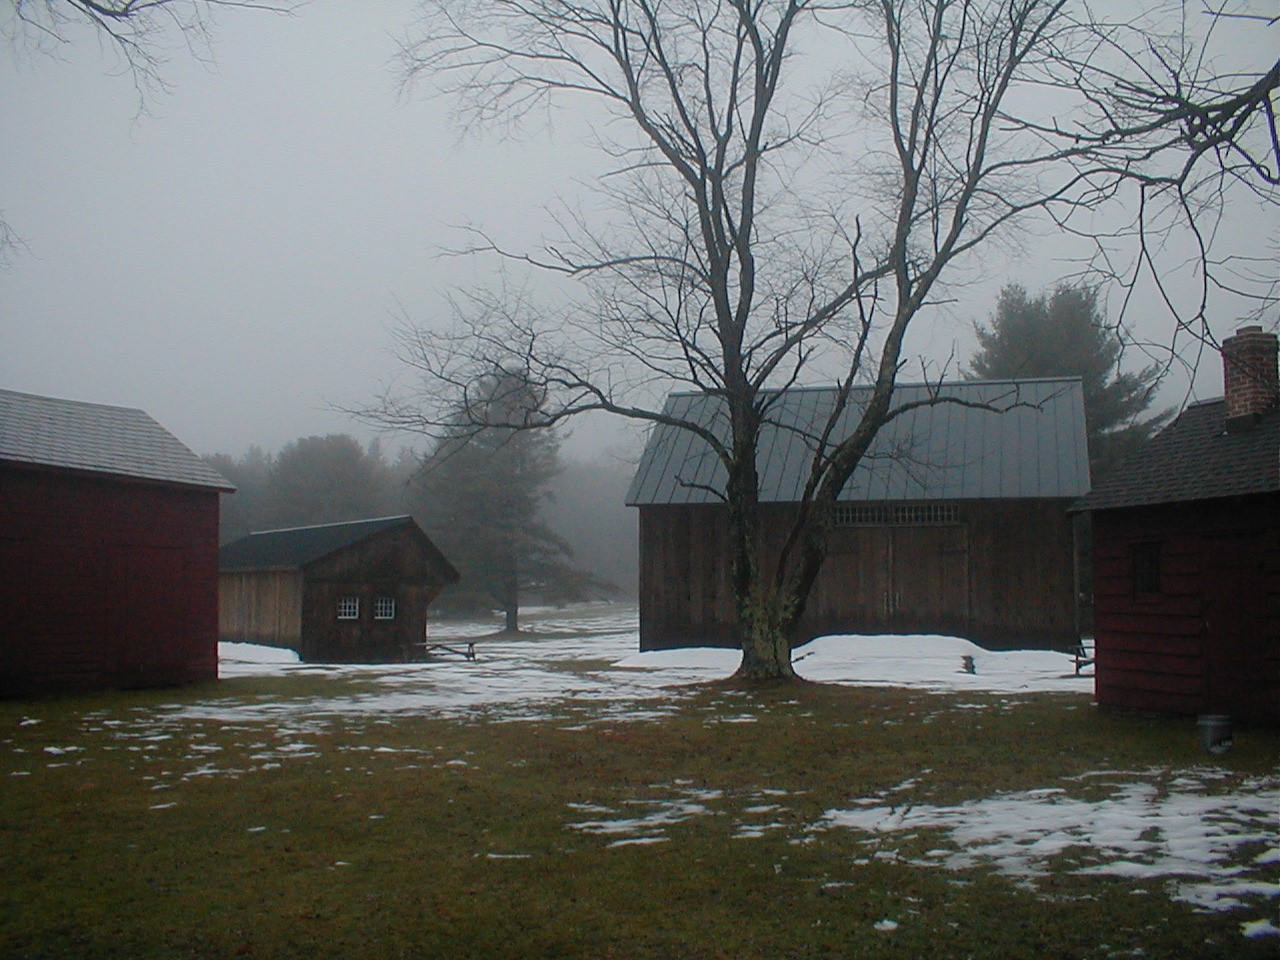 Barn&Shed in Fog